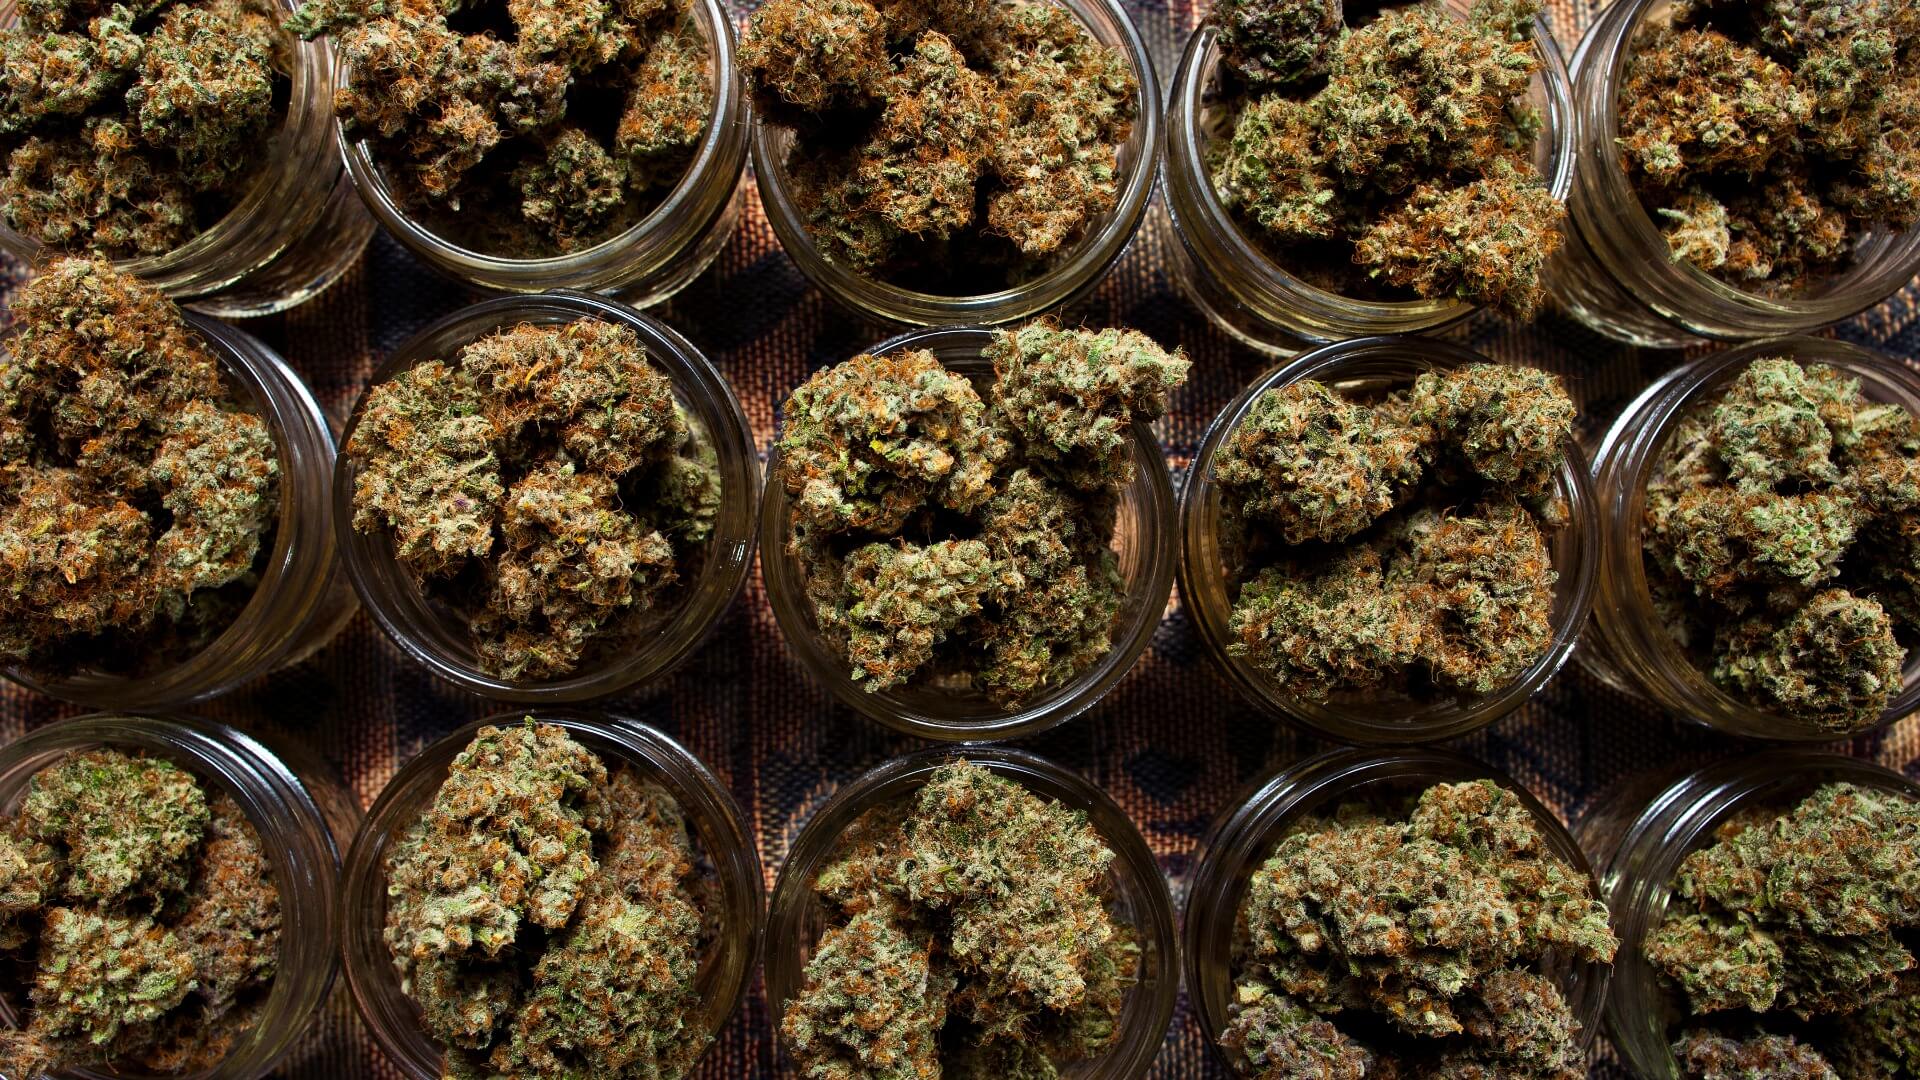 jars of dried cannabis